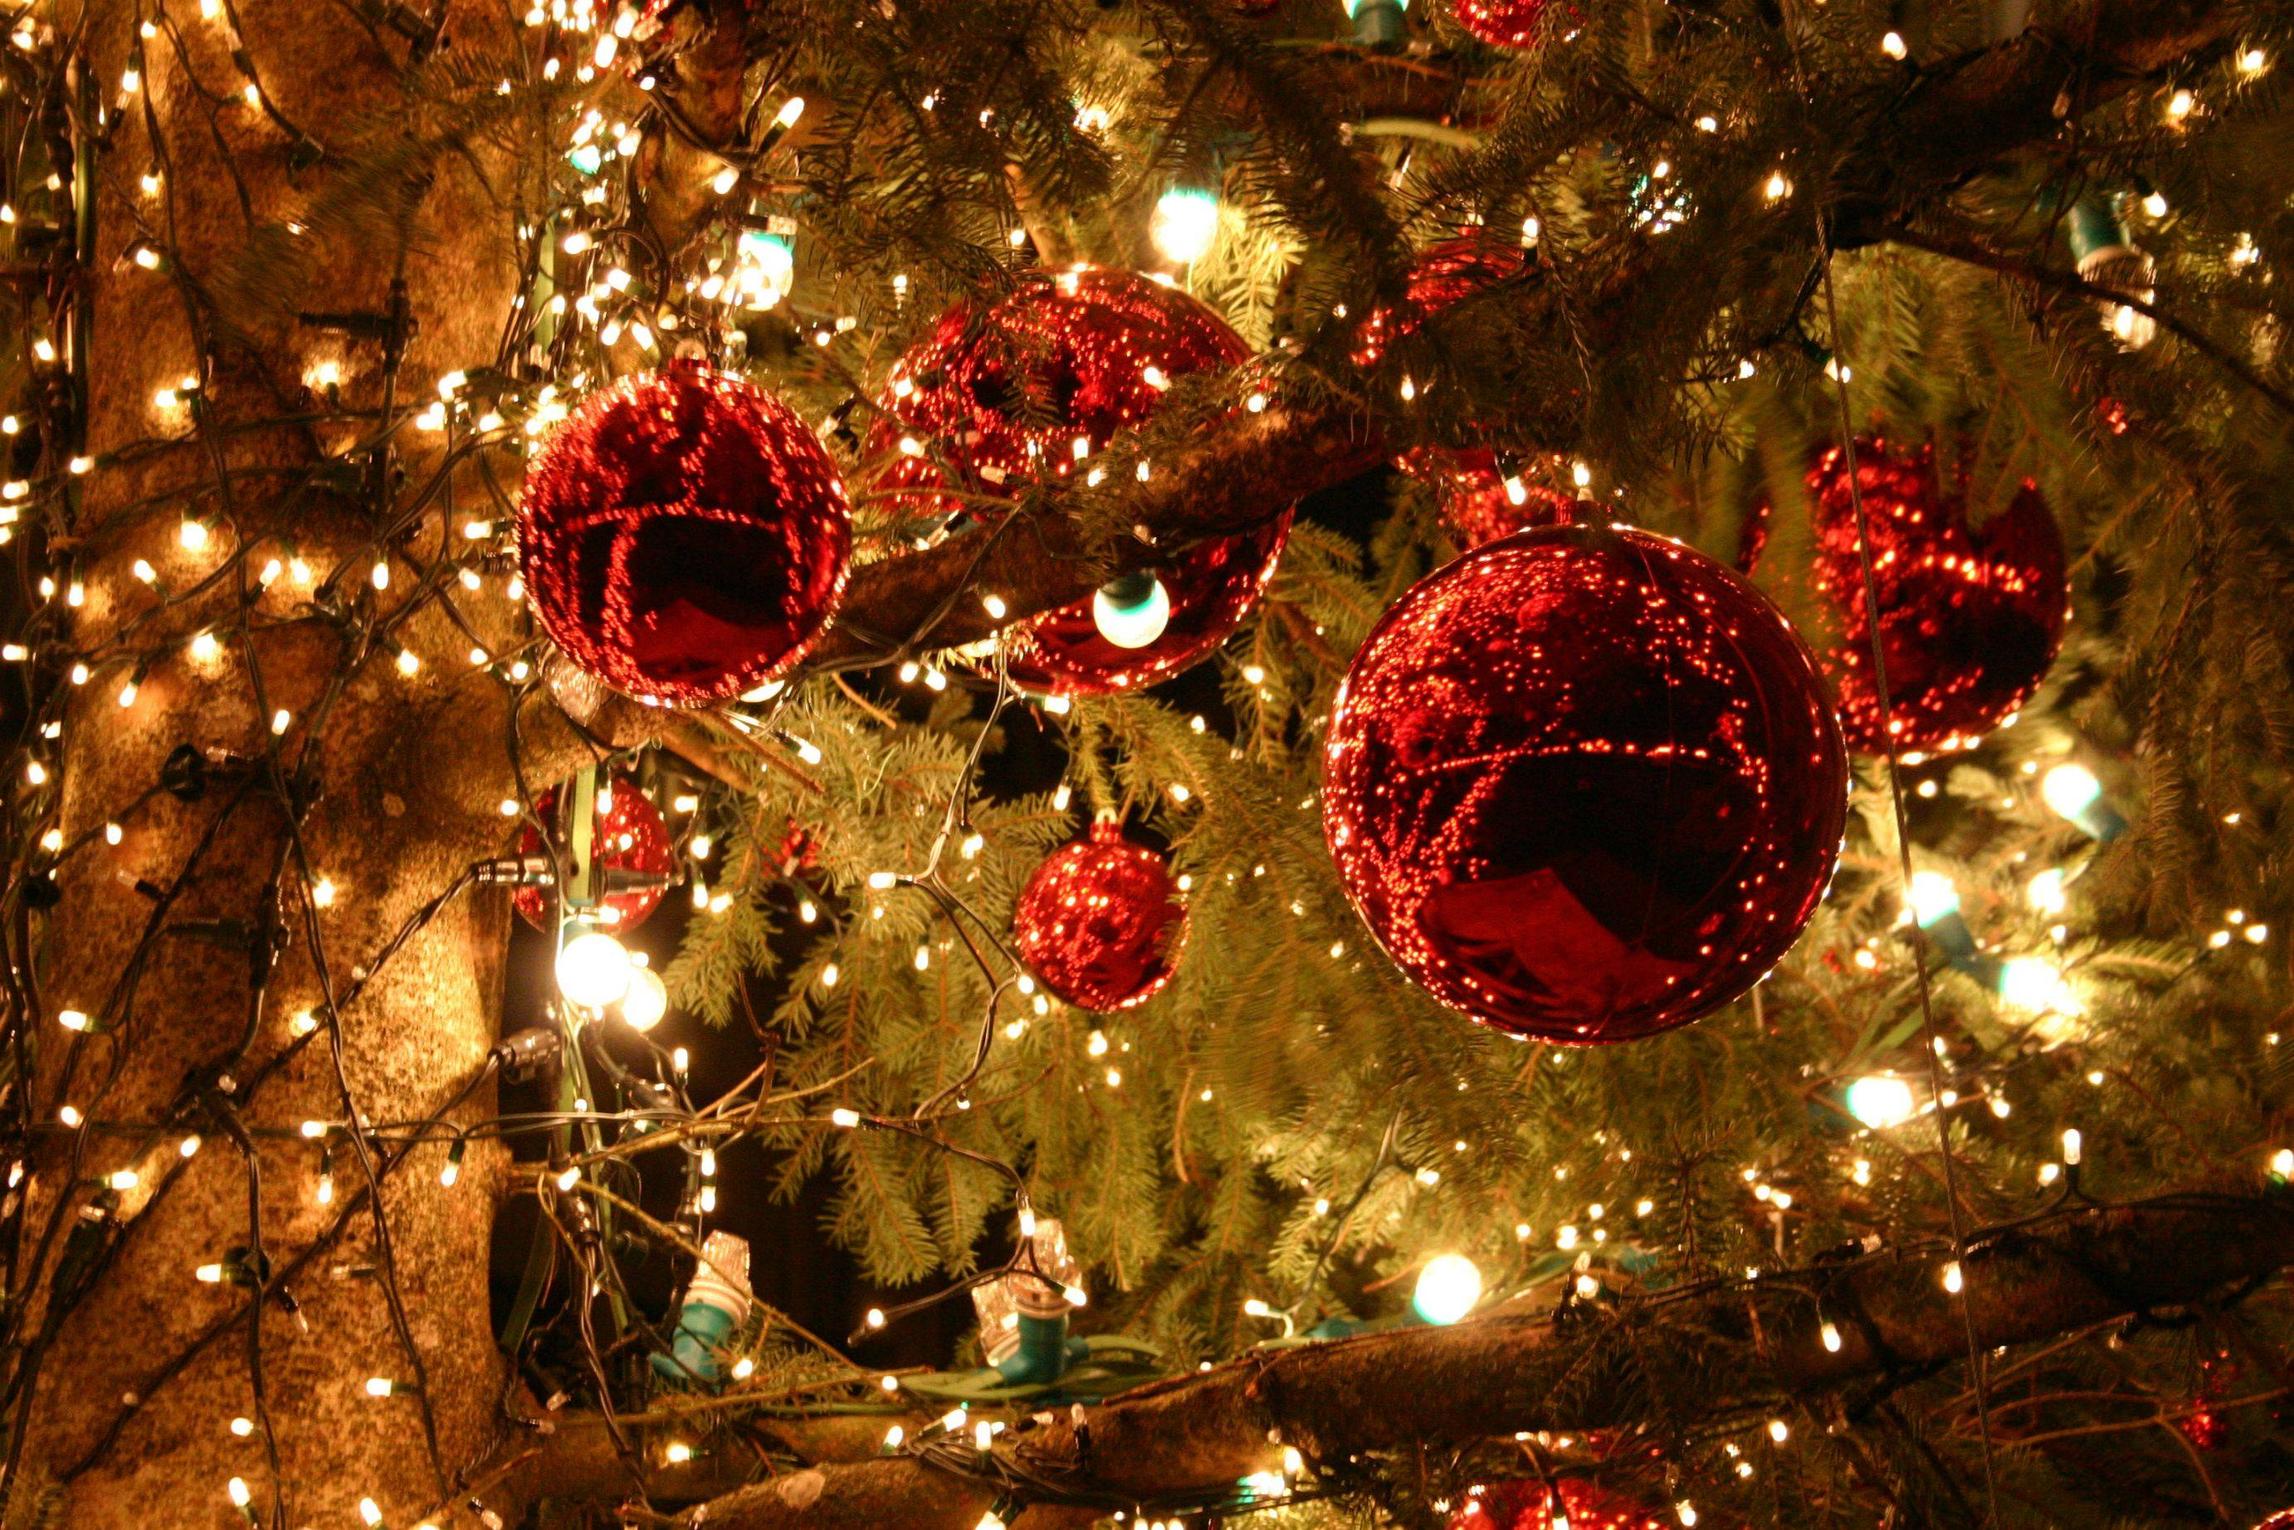 hochauflösende weihnachtstapete,weihnachtsschmuck,weihnachtsdekoration,weihnachten,weihnachtsbaum,baum